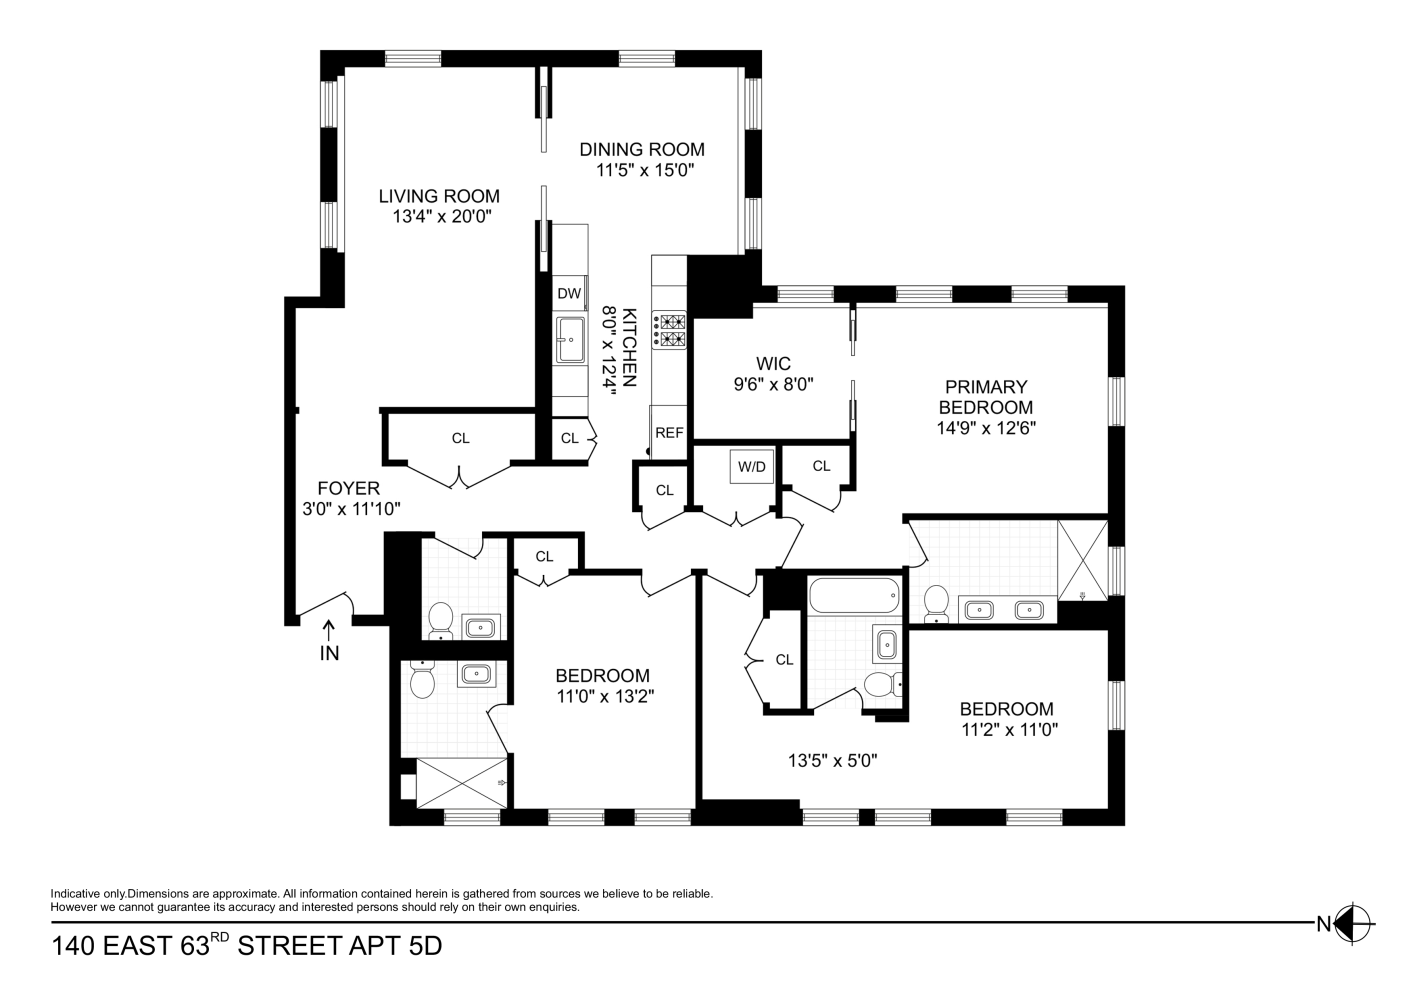 Floorplan for 140 East 63rd Street, 5DG